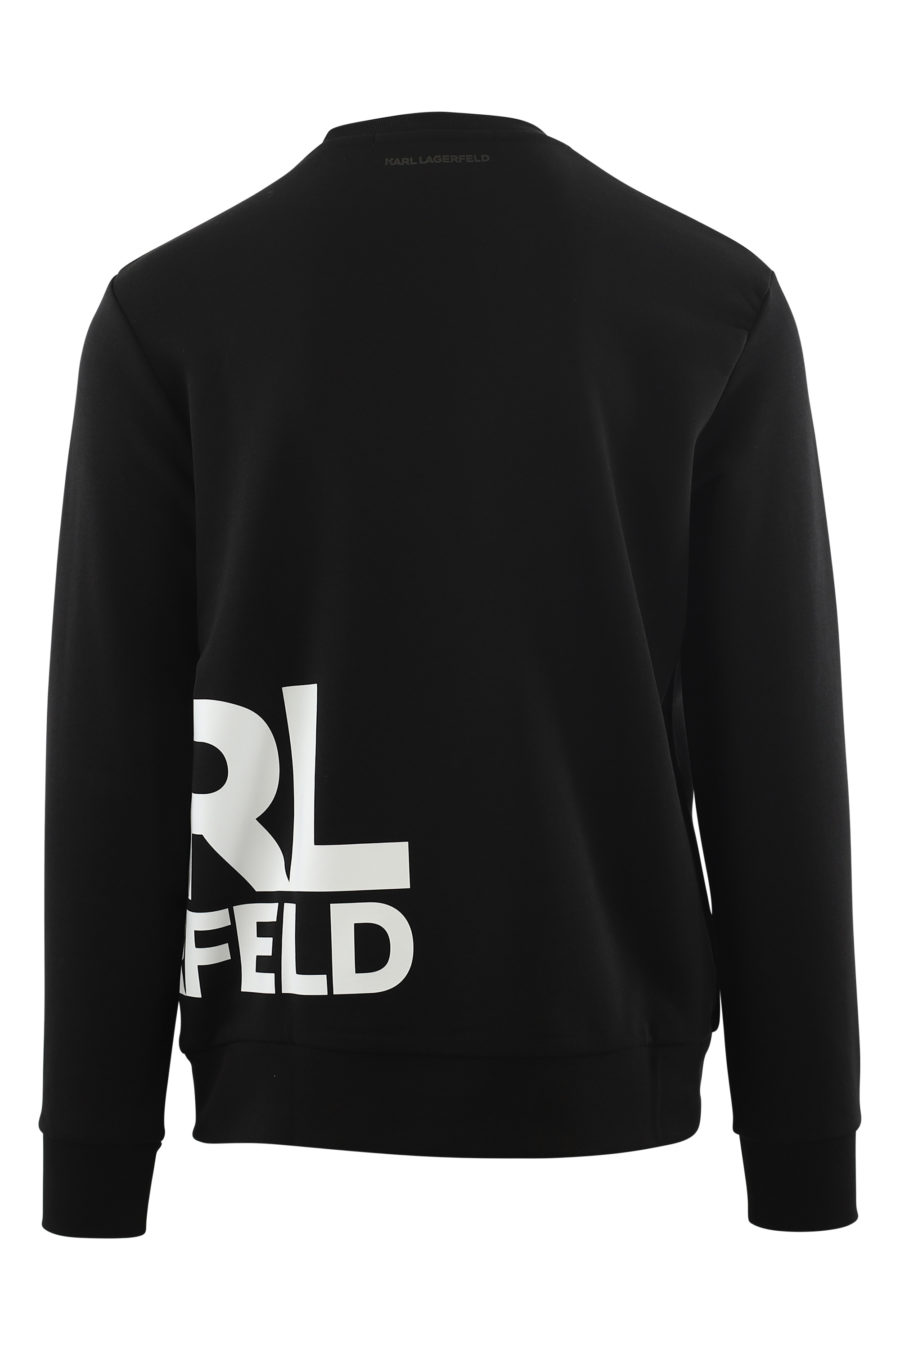 Black sweatshirt with large white side logo - IMG 6565